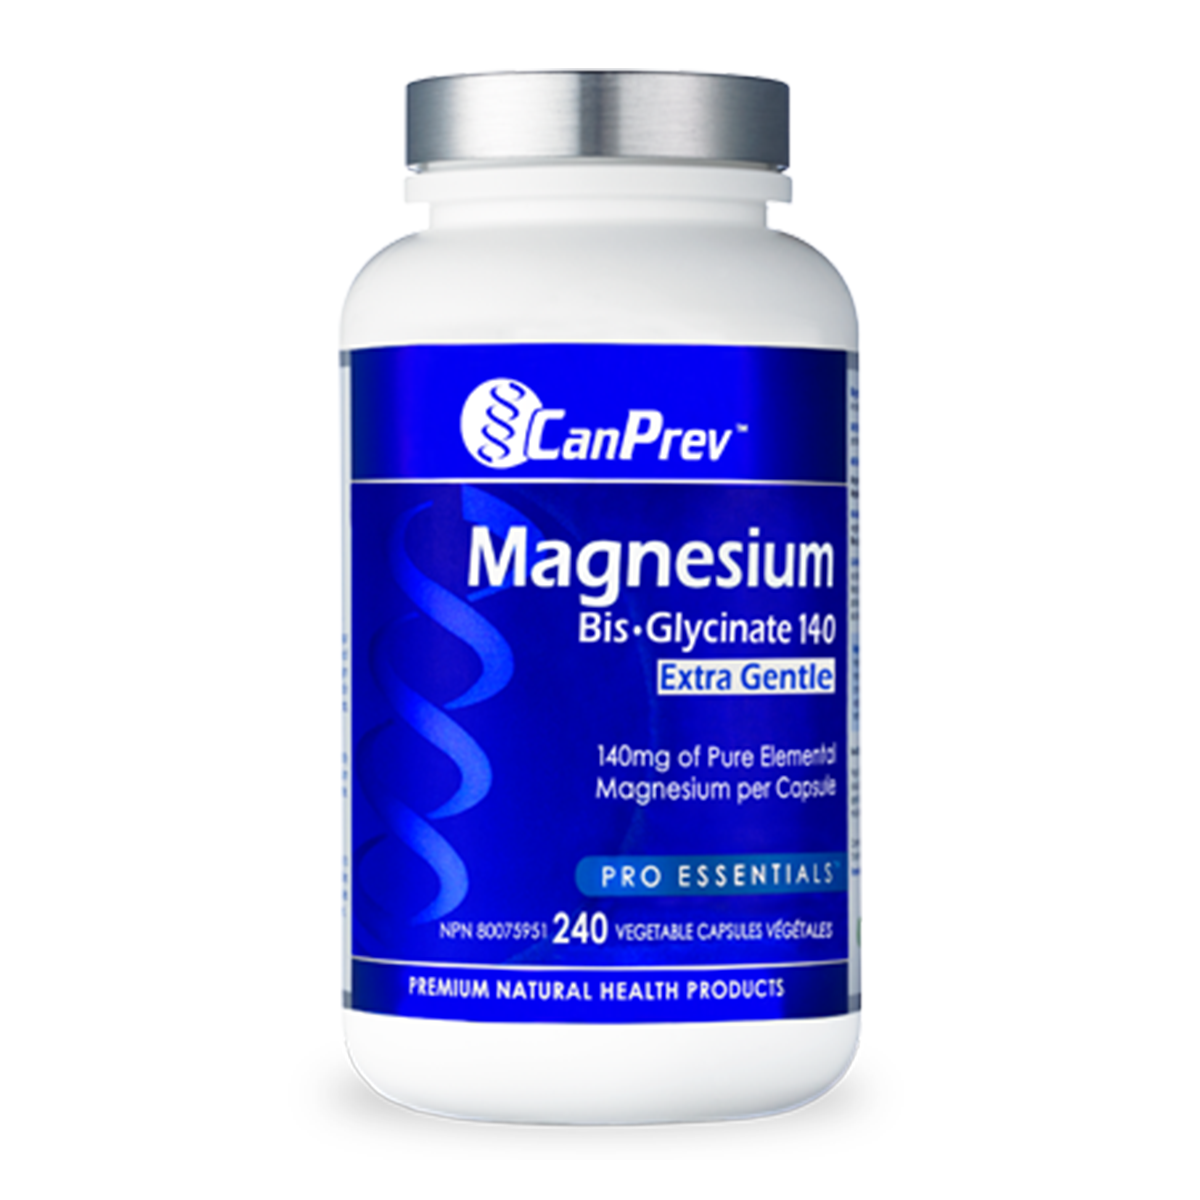 CanPrev Magnesium Bis-Glycinate 140 Extra Gentle 240 Veggie Caps